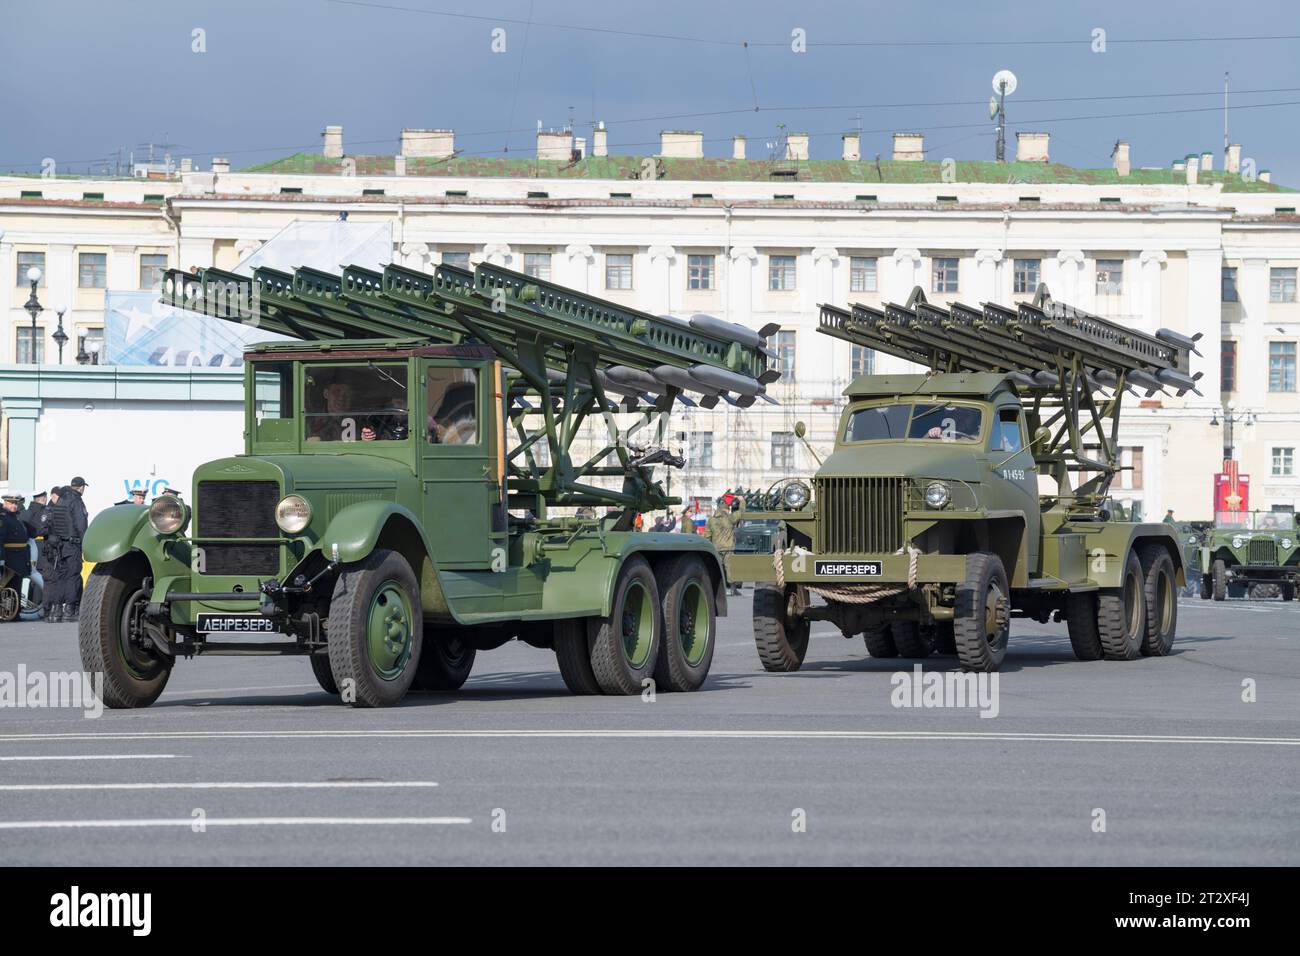 SAN PETERSBURGO, RUSIA - 04 DE MAYO de 2023: Vehículos ZIS-6 y Studebaker US6 con sistemas de cohetes de lanzamiento múltiple BM-13N (Katyusha) en el ensayo de t Foto de stock